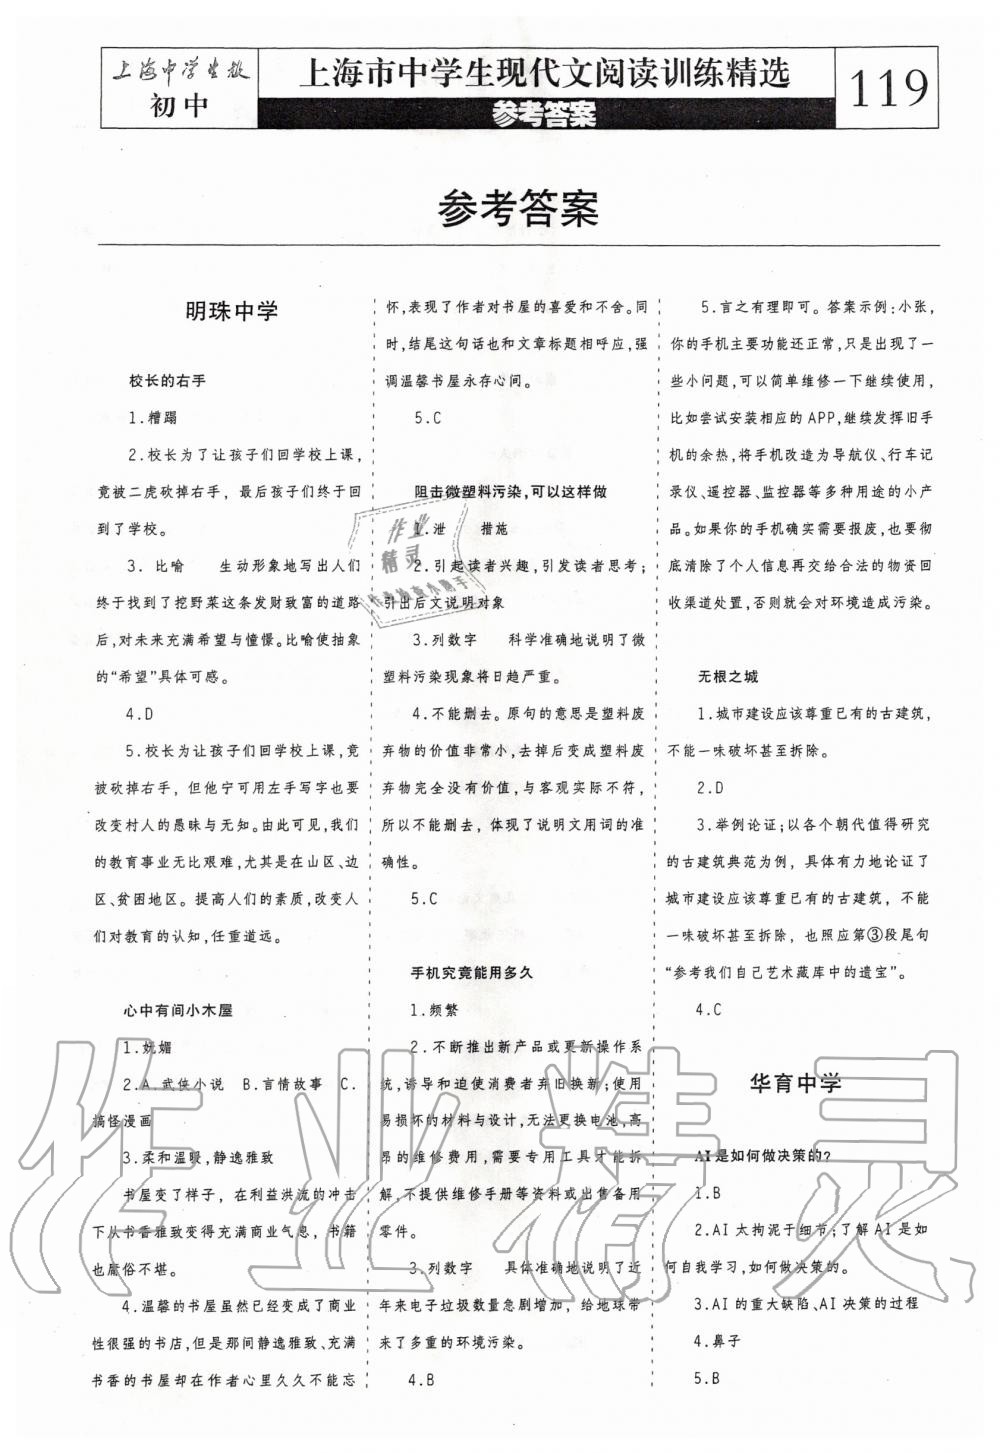 2019年上海中学生报现代文阅读训练精选读本初中卷 第1页